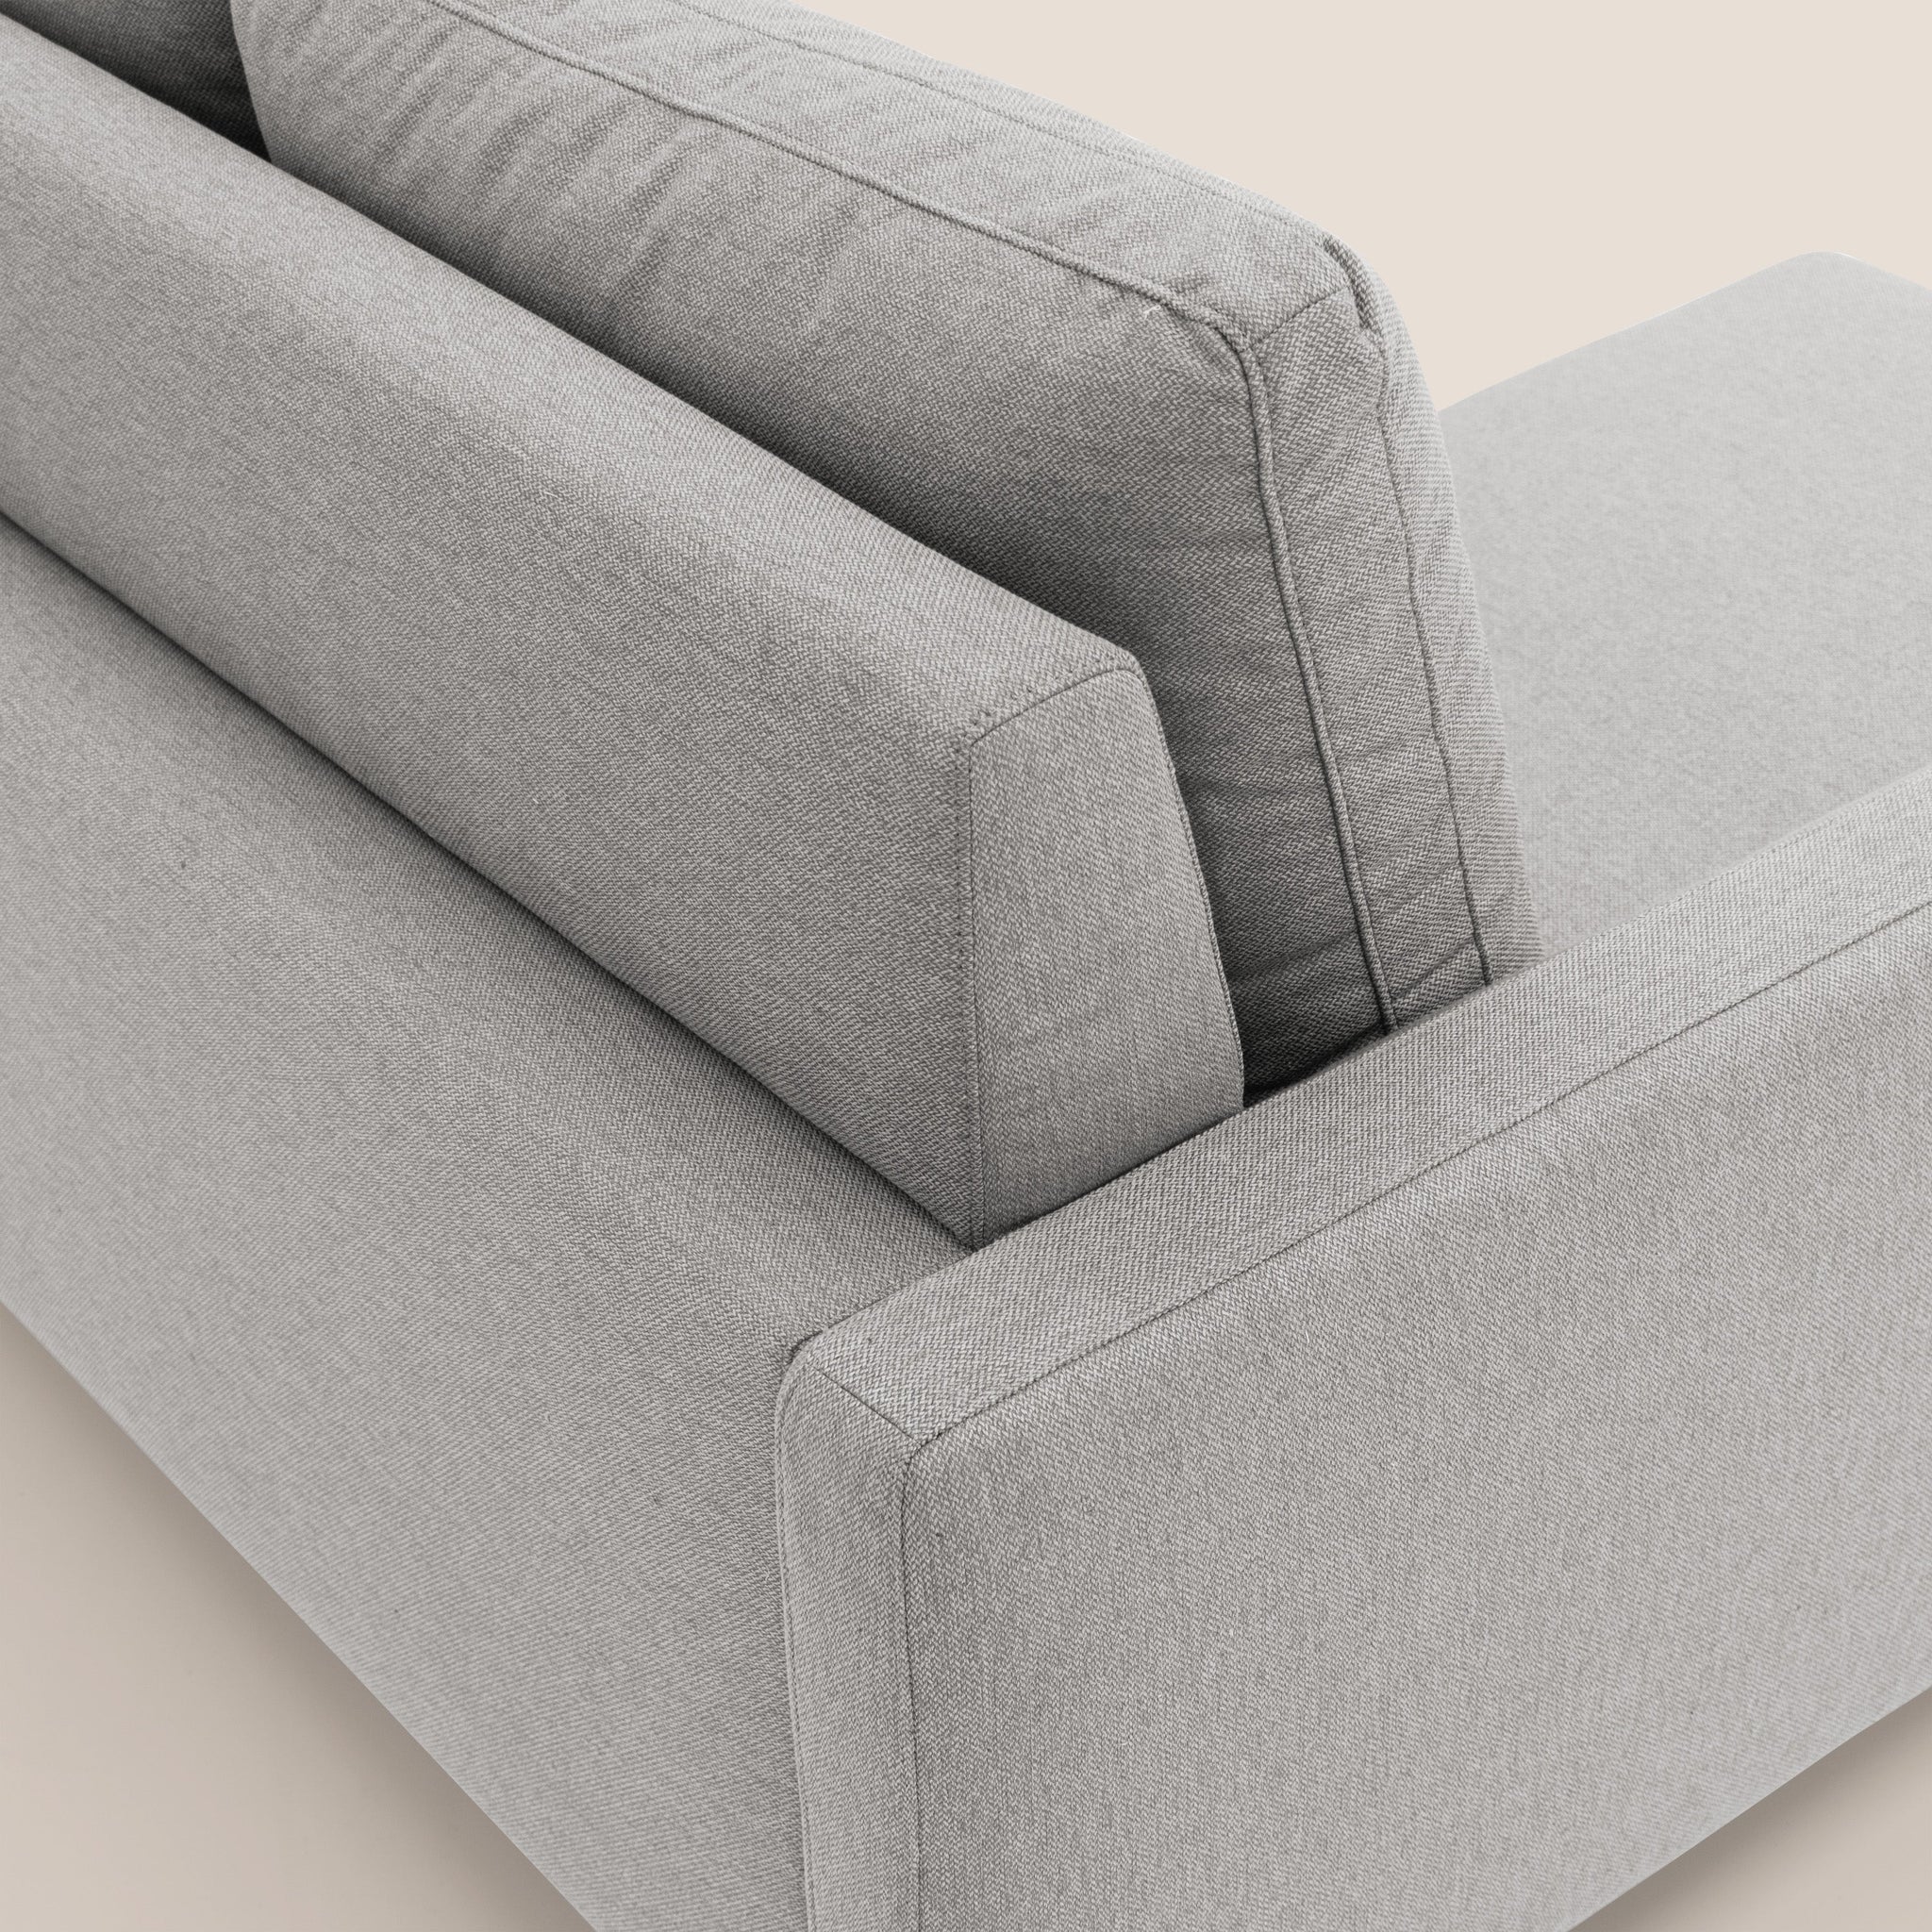 Klimt canapé 3 assises coulissantes et dossier en duvet d'oie en tissu détachable T05